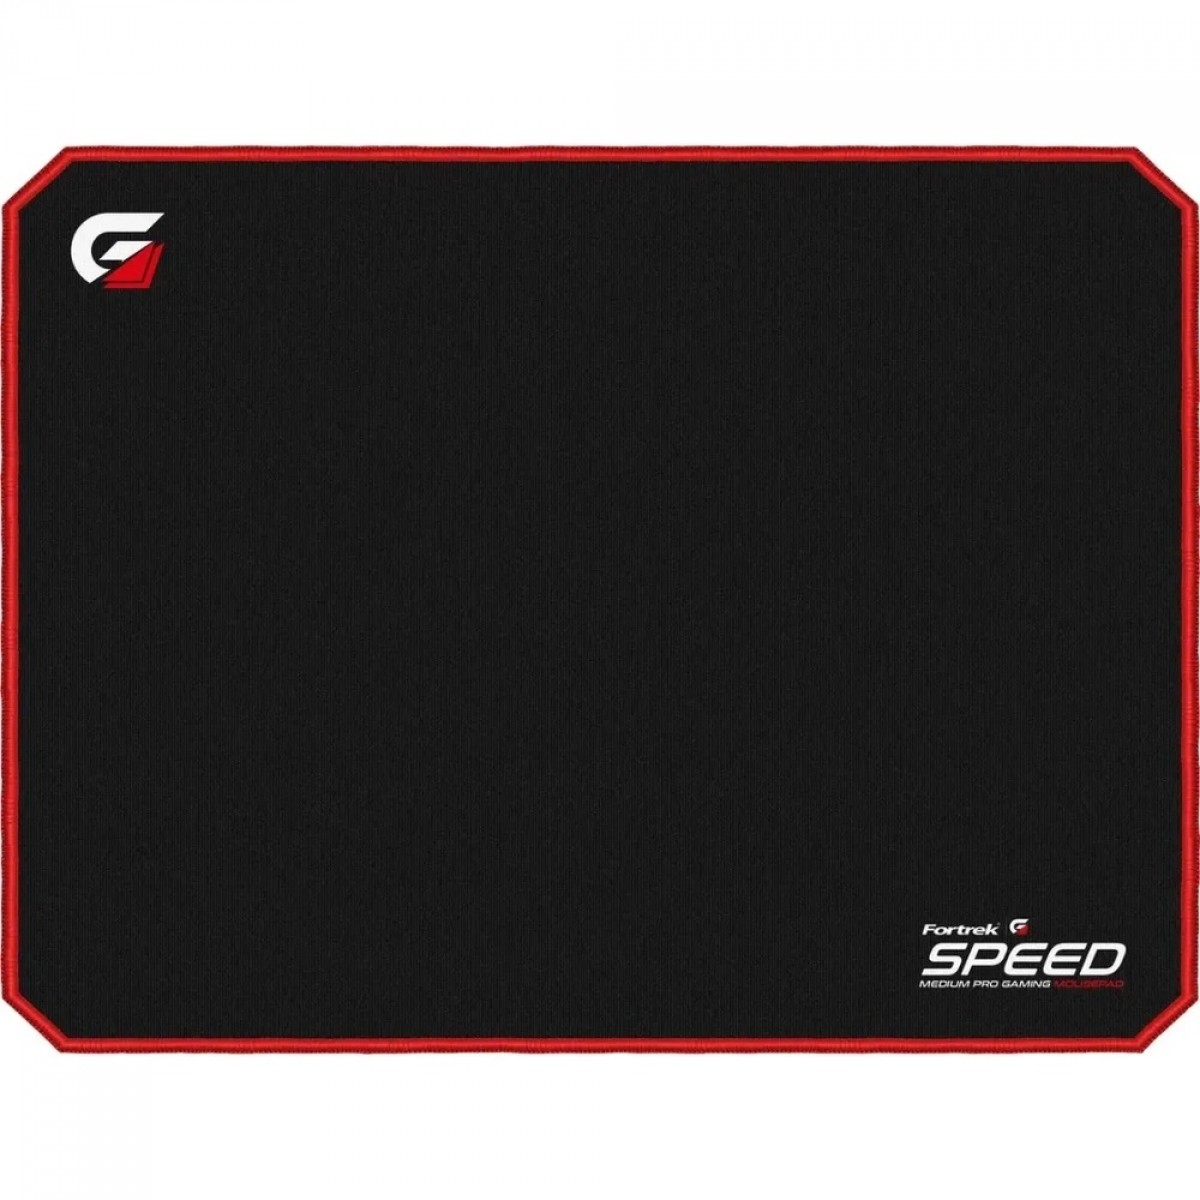 Mouse Pad Gamer Fortrek Speed MPG101 VM, Médio (320x240mm), Preto/Vermelho - 72692